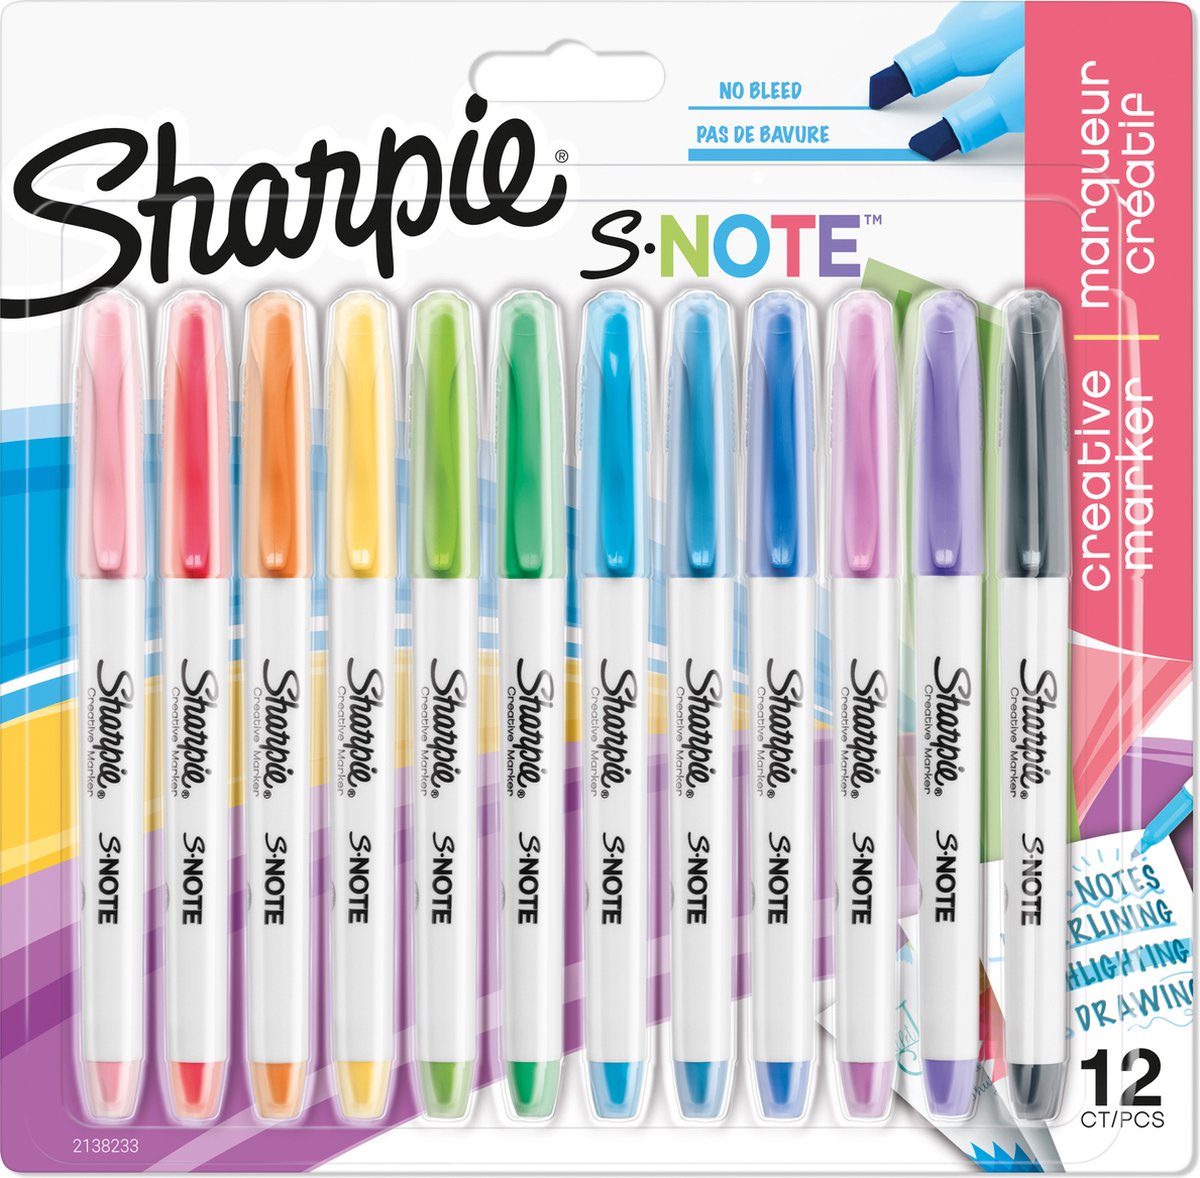 Sharpie S-Note creatieve kleurenmarkers | Markeerstift om mee te schrijven, tekenen en meer | Diverse pastelkleuren | Beitelpunt | 12 stuks - Sharpie